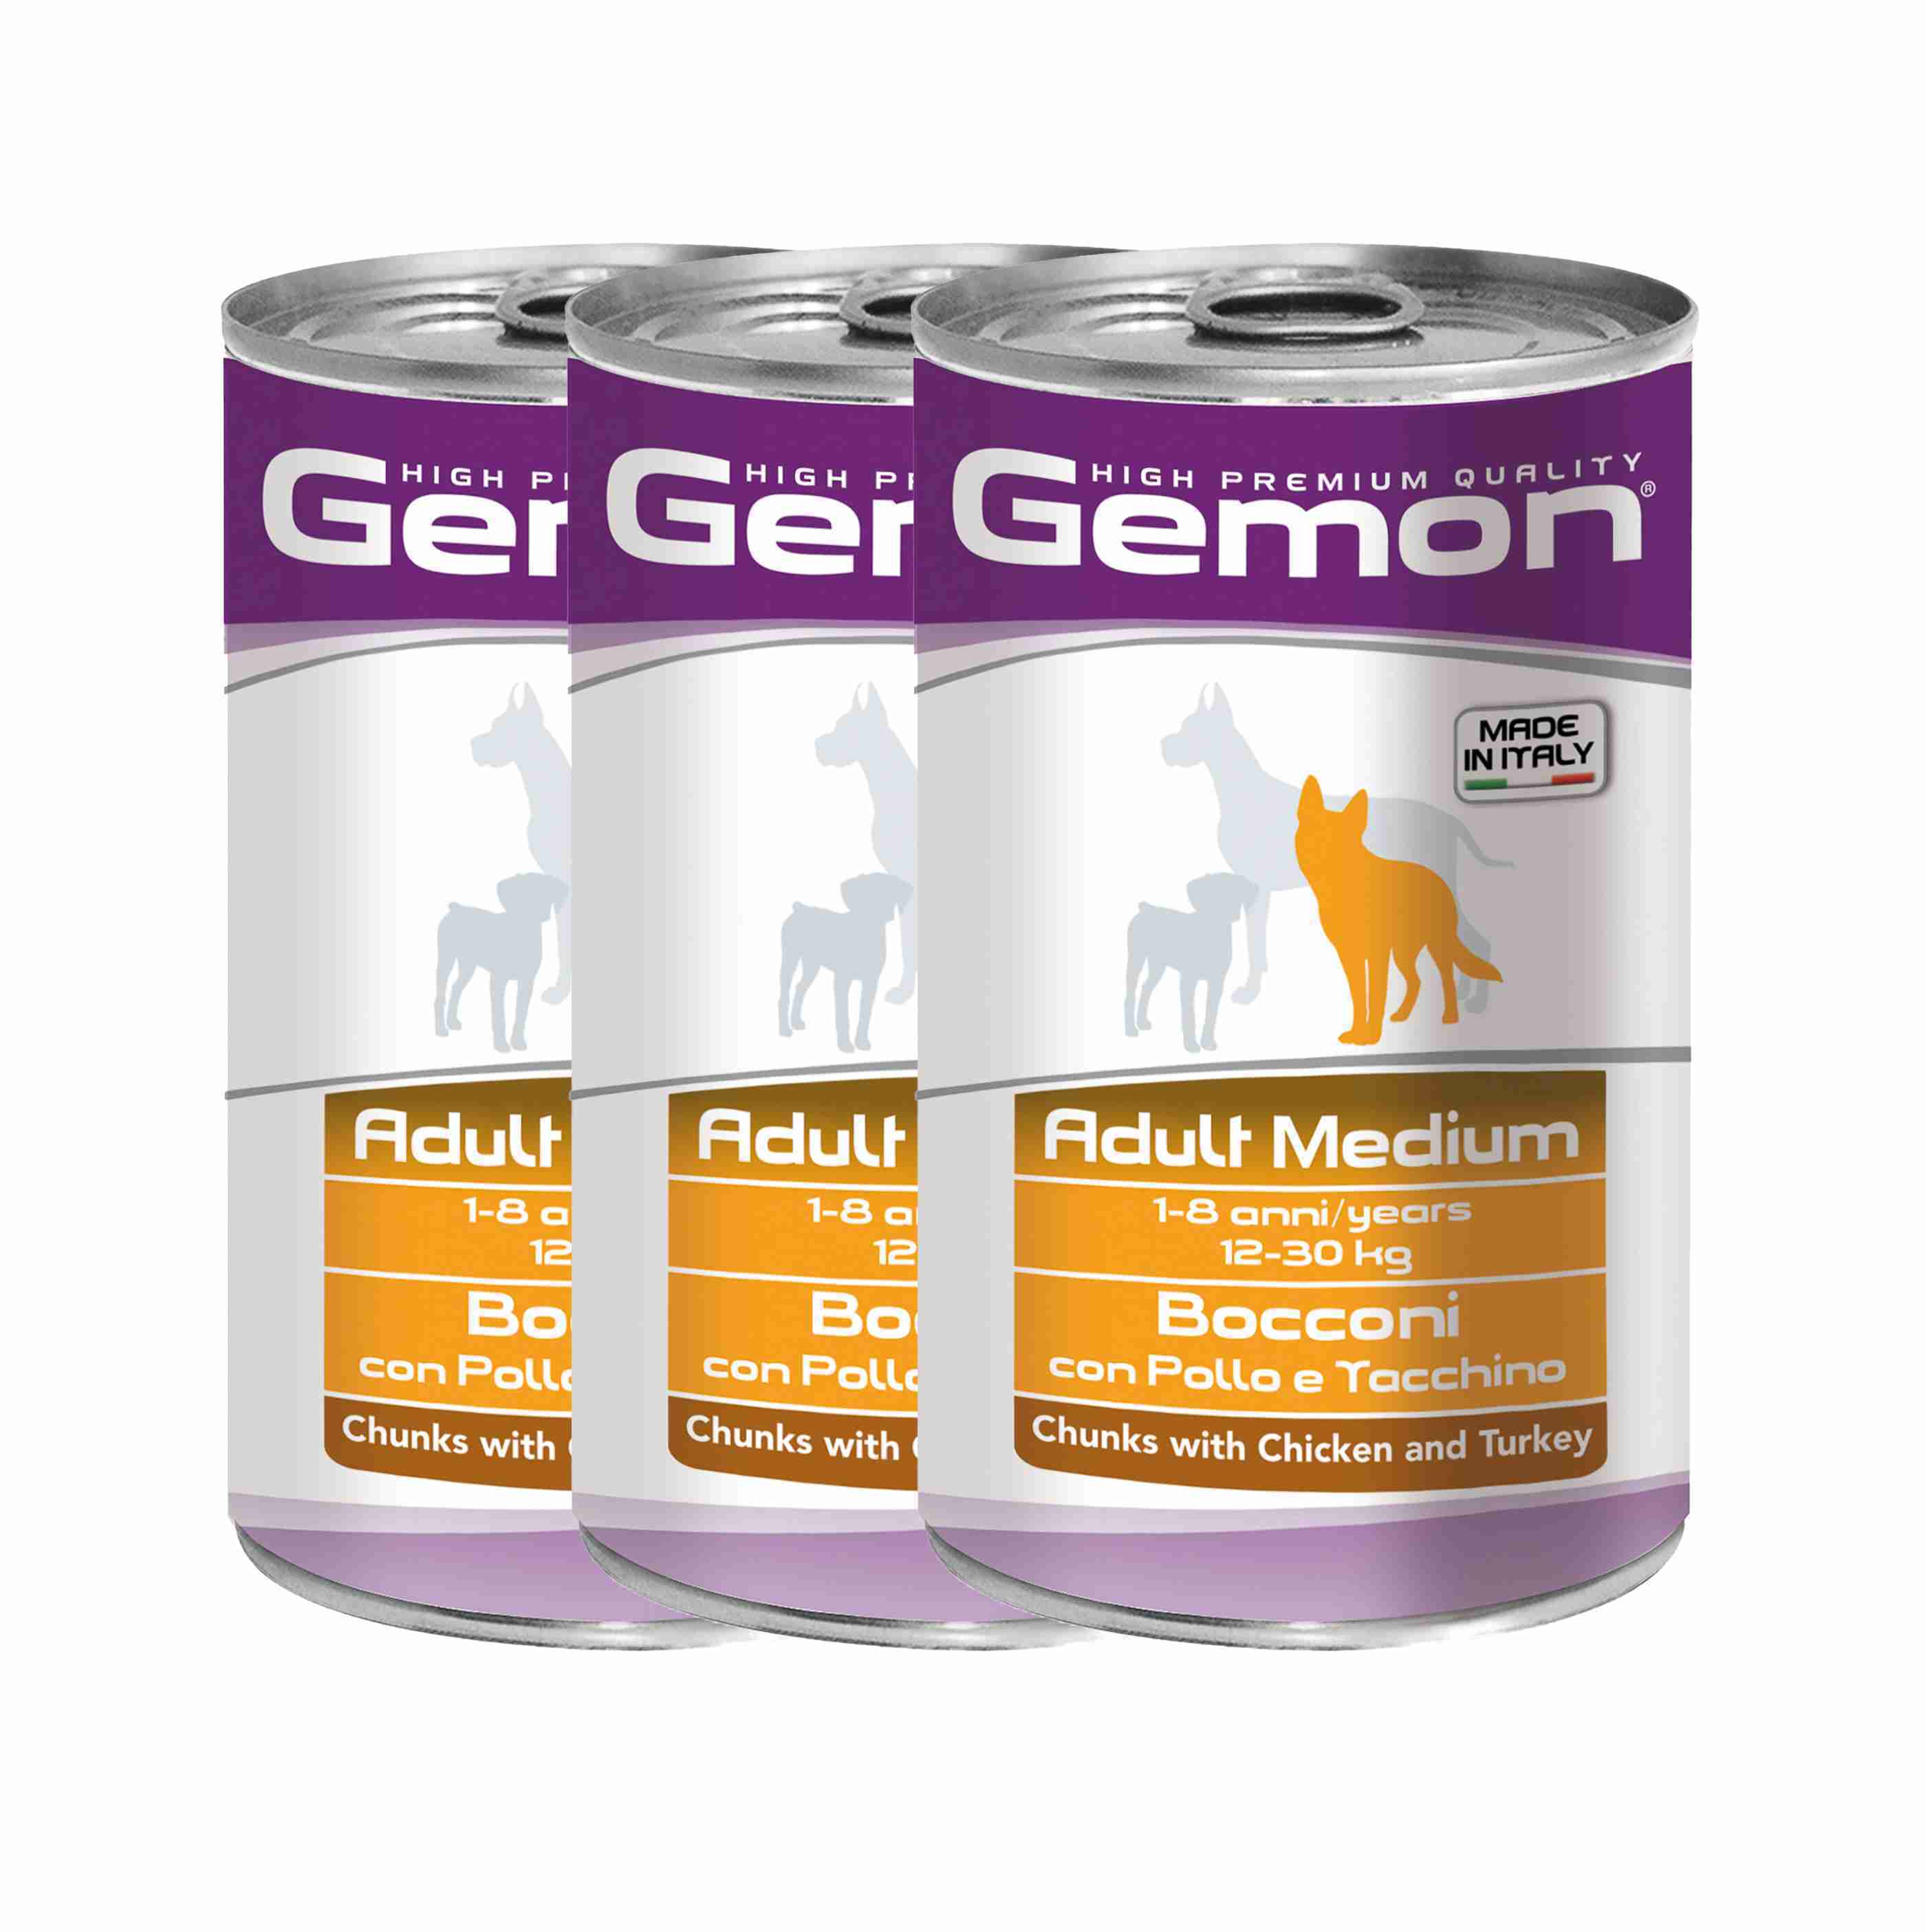 Gemon корм для собак